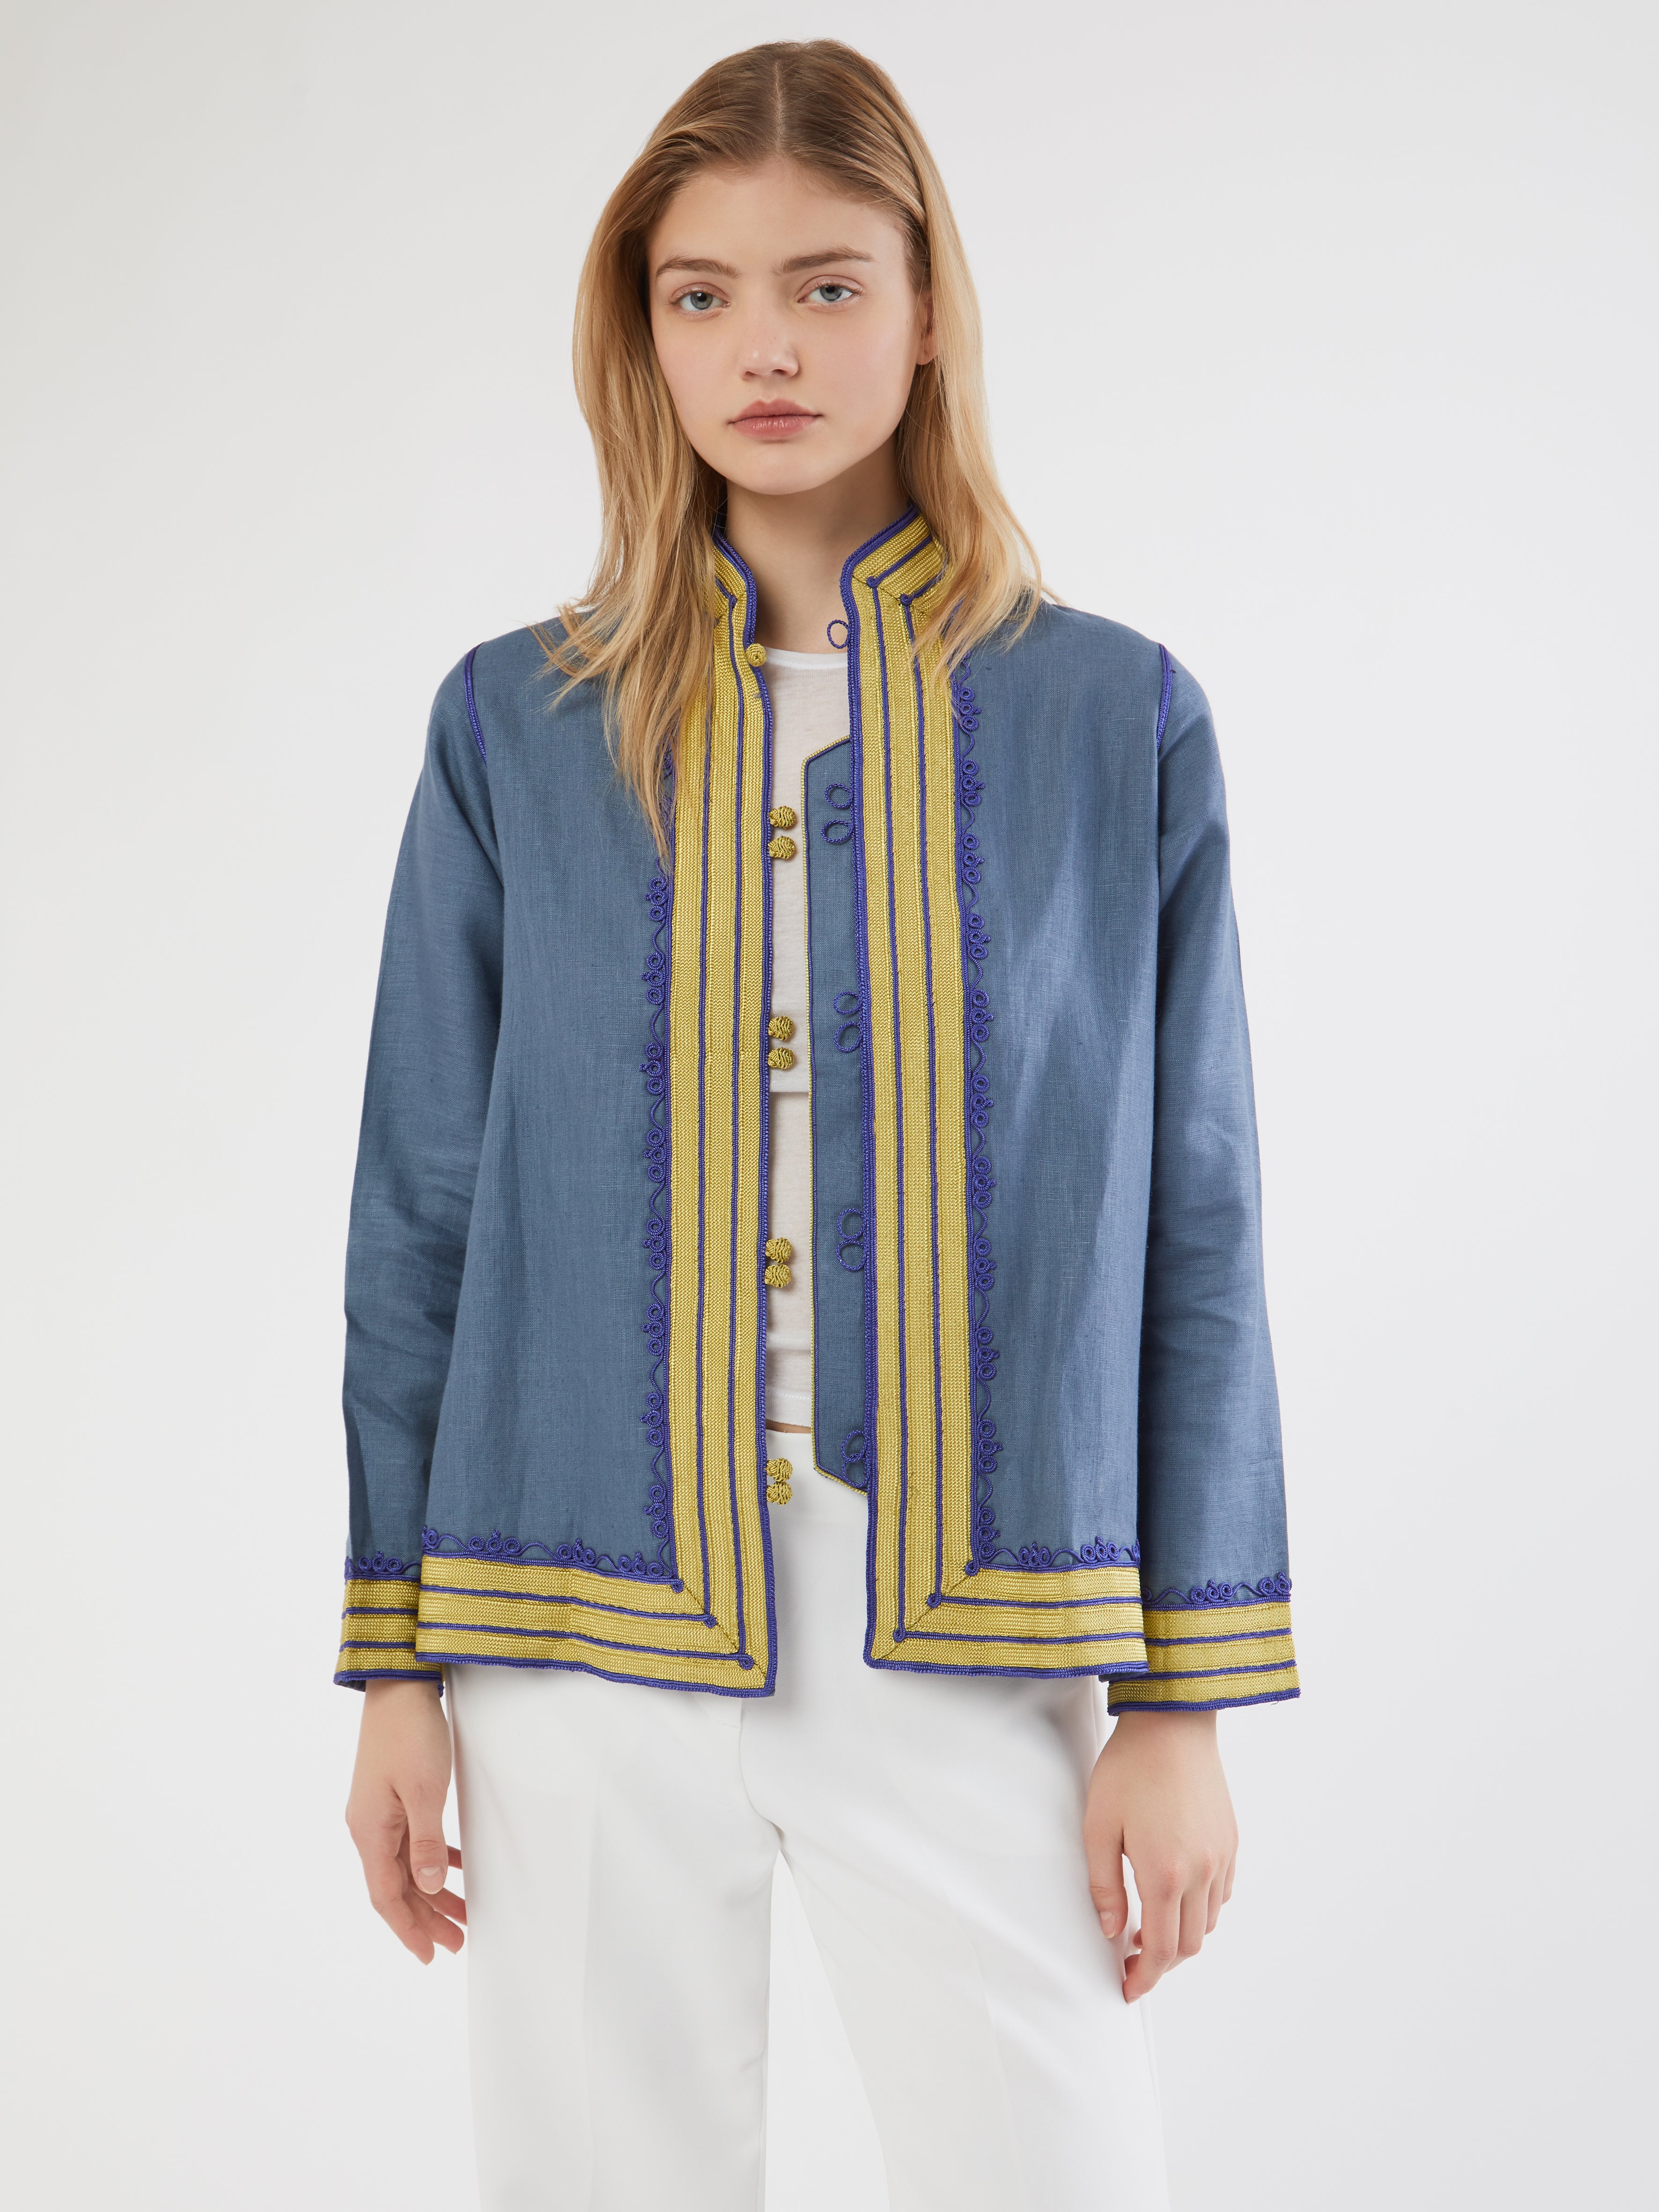 Moroccan linen jacket